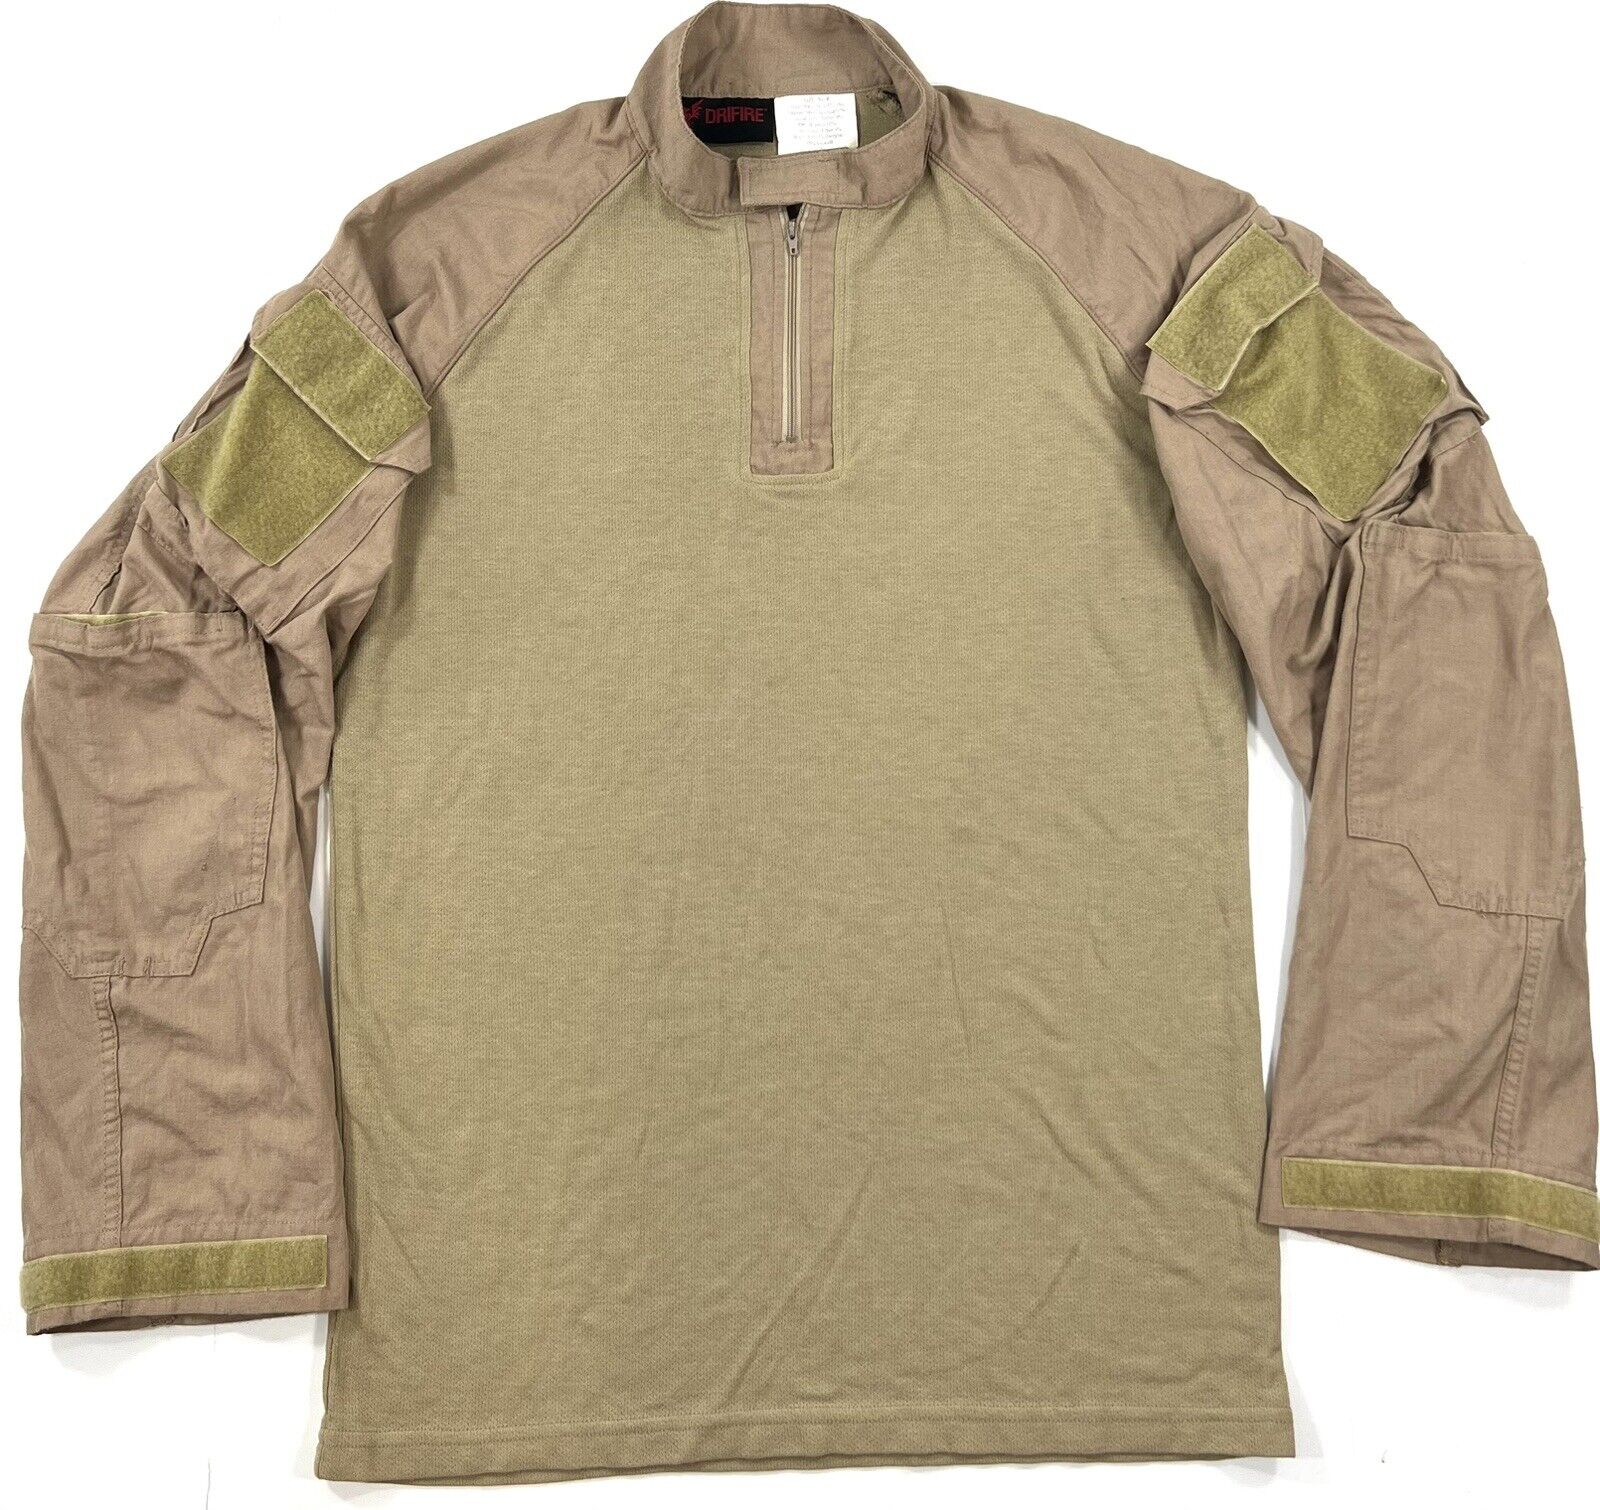 Drifire FORTREX FR Combat Shirt XL Regular Tan DF2-7129-CS-450 NAVAIR